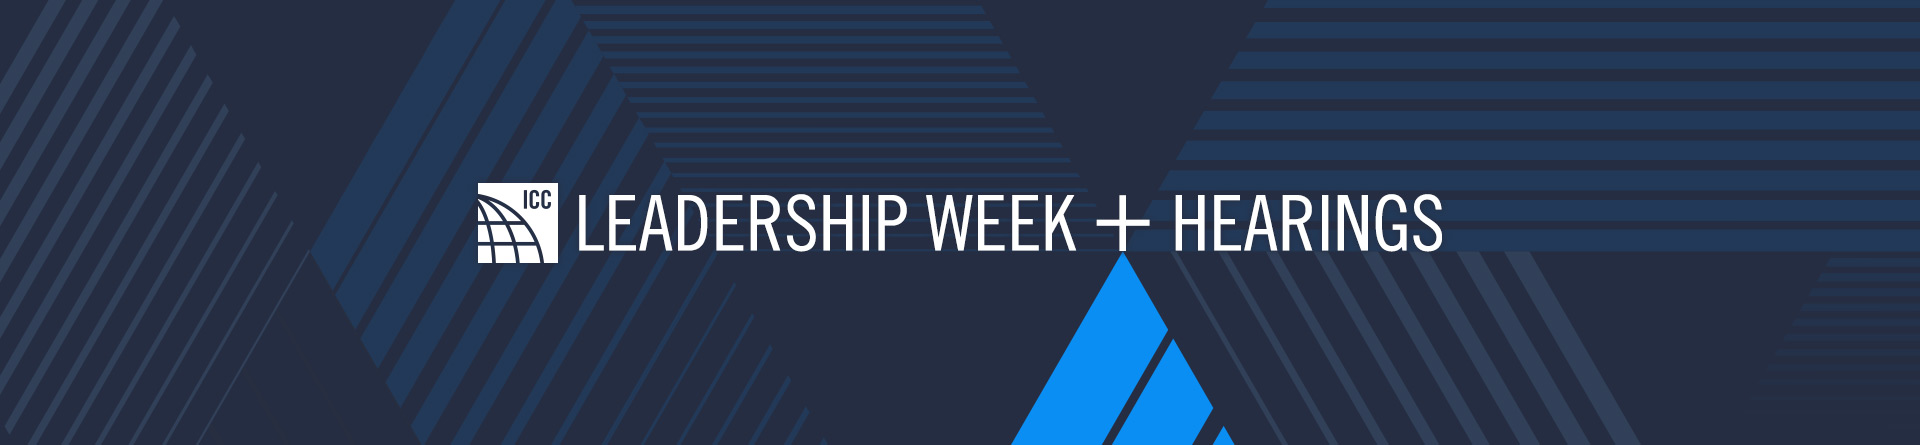 Leadership Week + Hearings